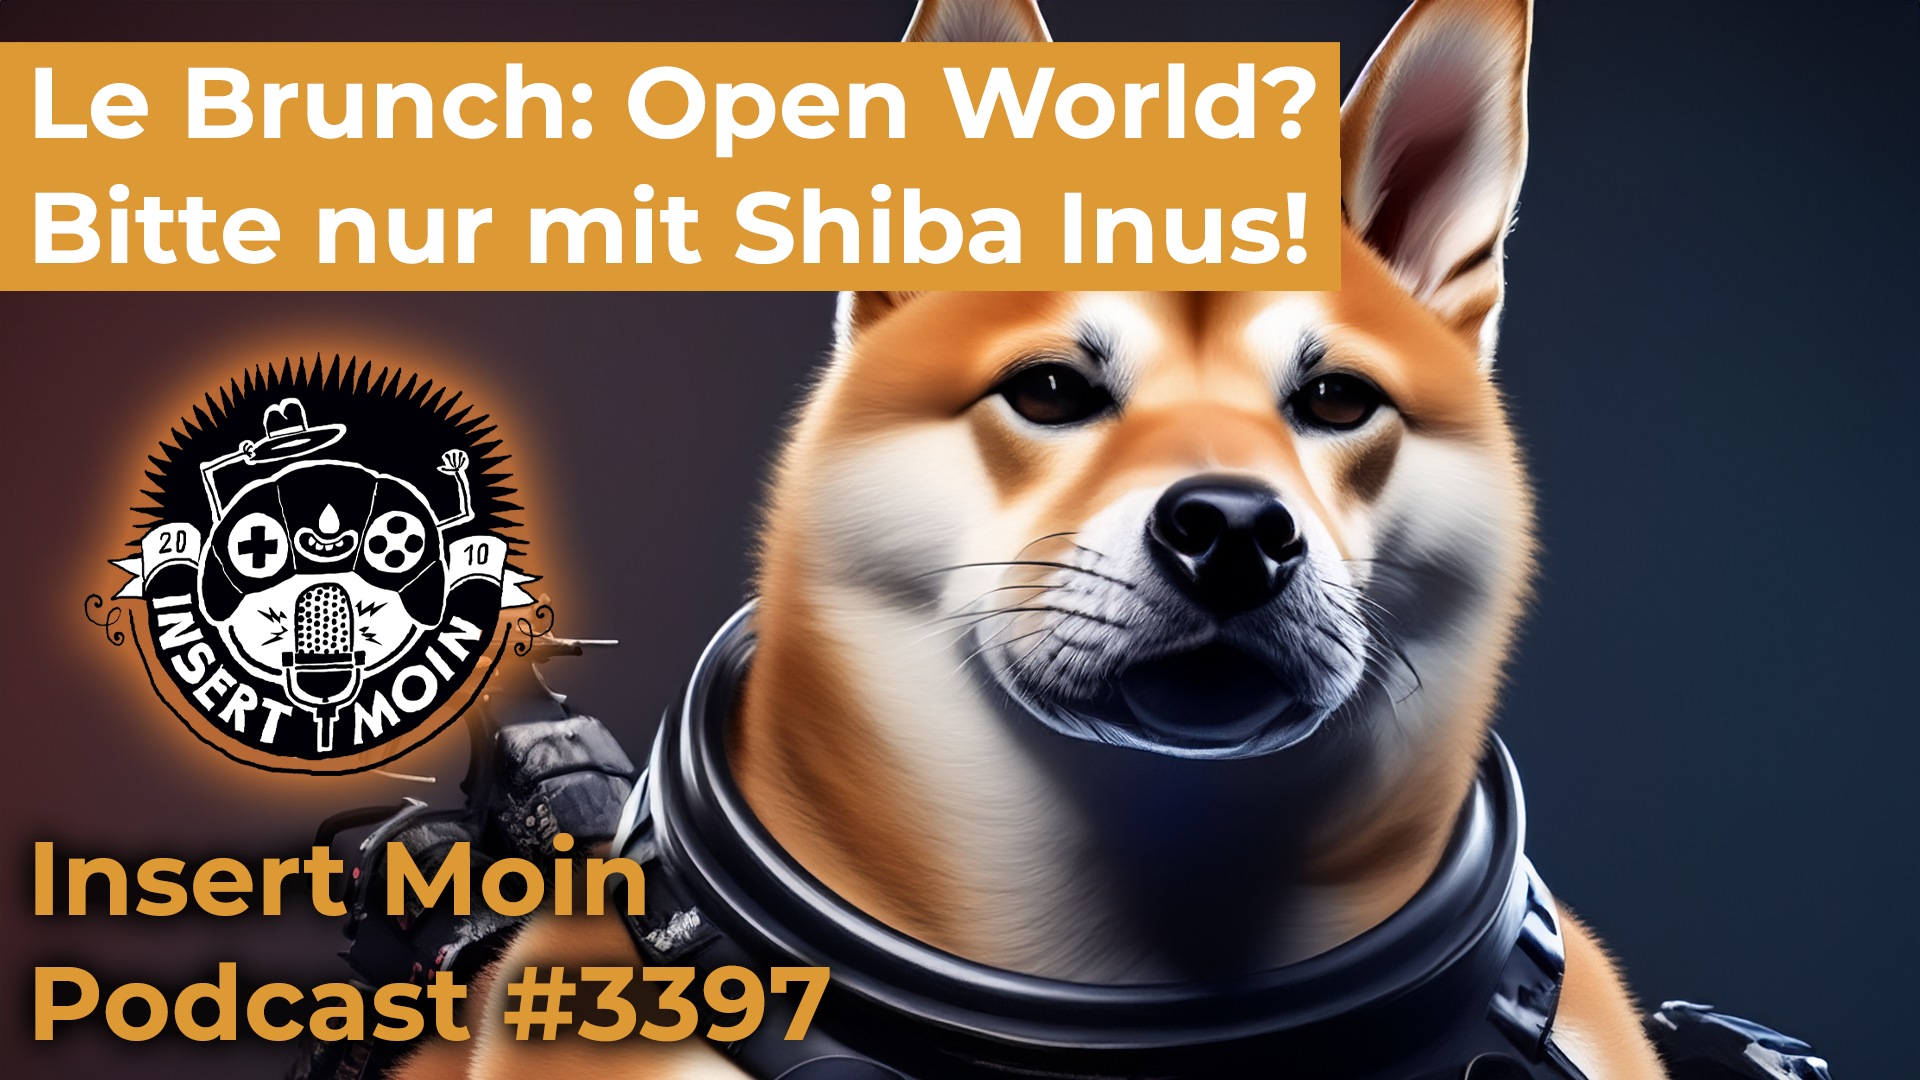 Le Brunch: Open World? Bitte nur mit Shiba Inus!